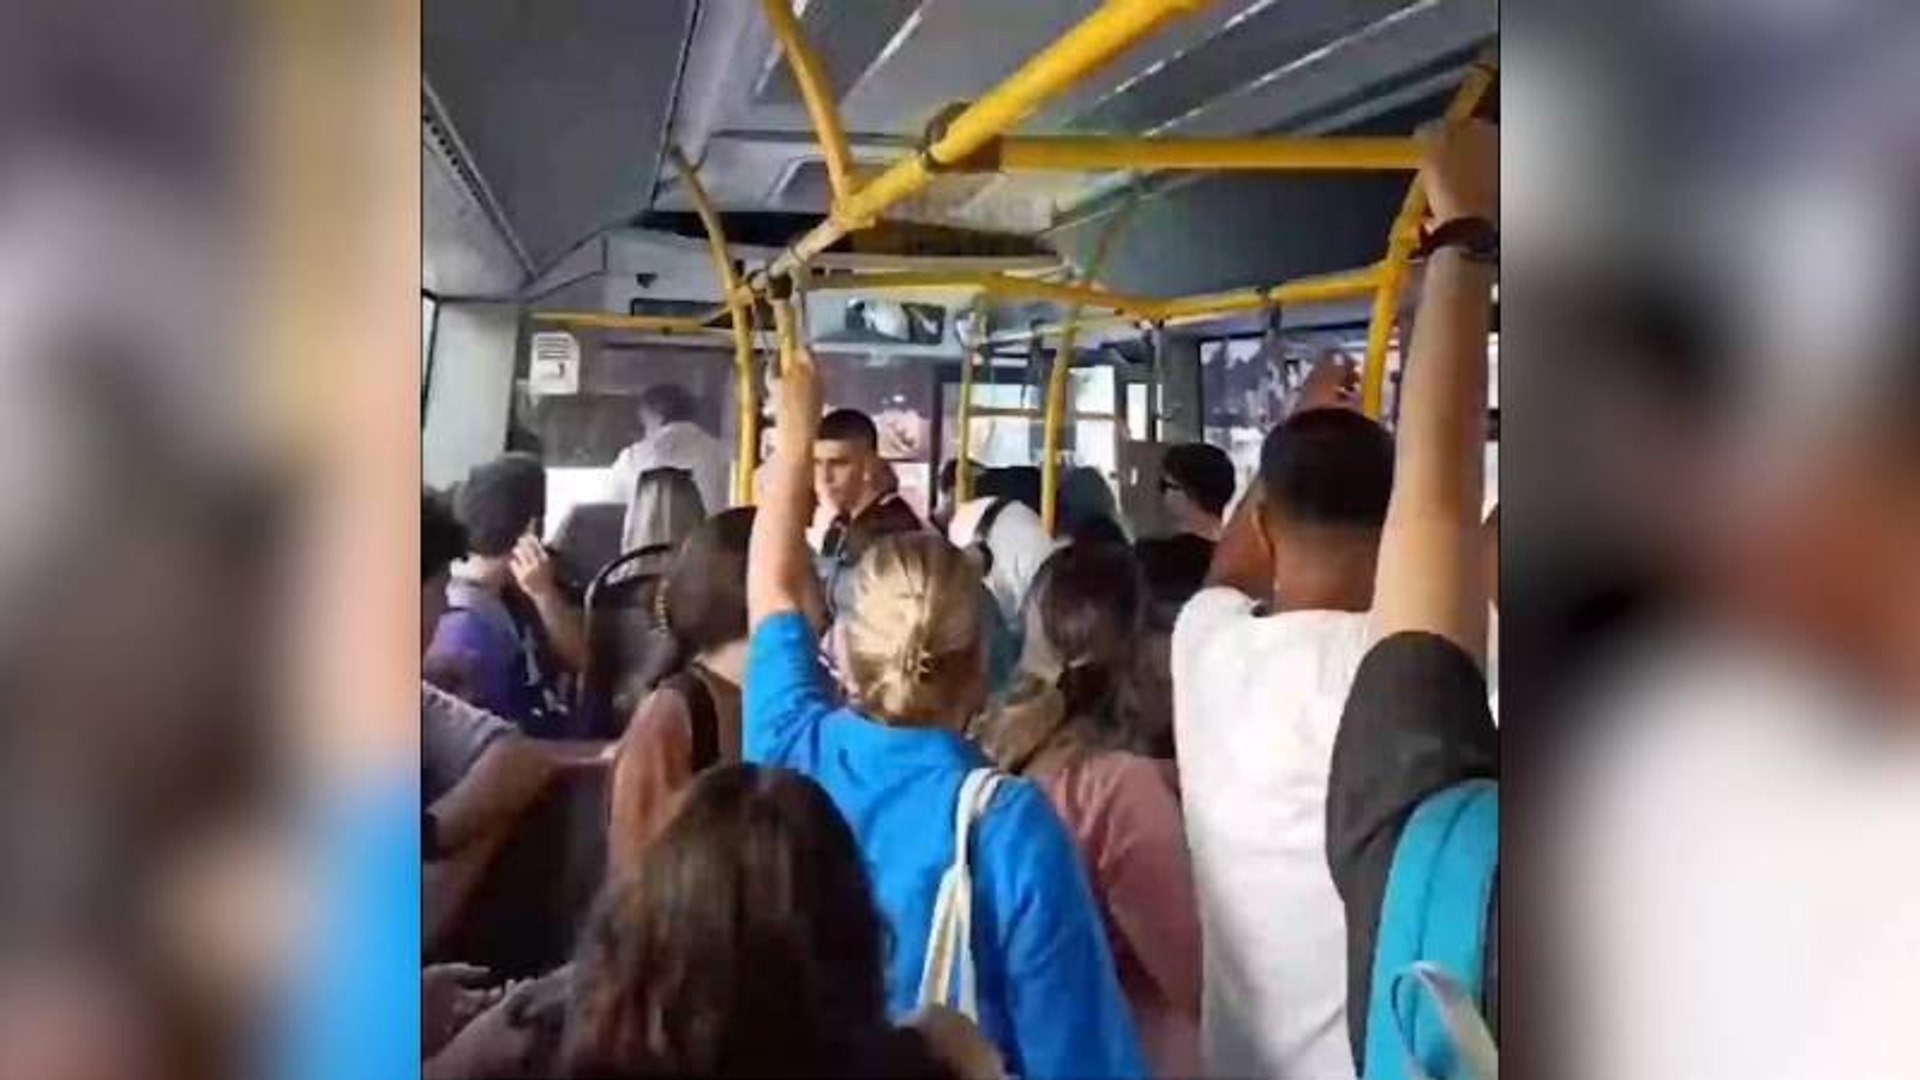 Klimaları açmadı diye sitem eden yolculara kızdı, aracı bırakıp gitti -  Dailymotion Video